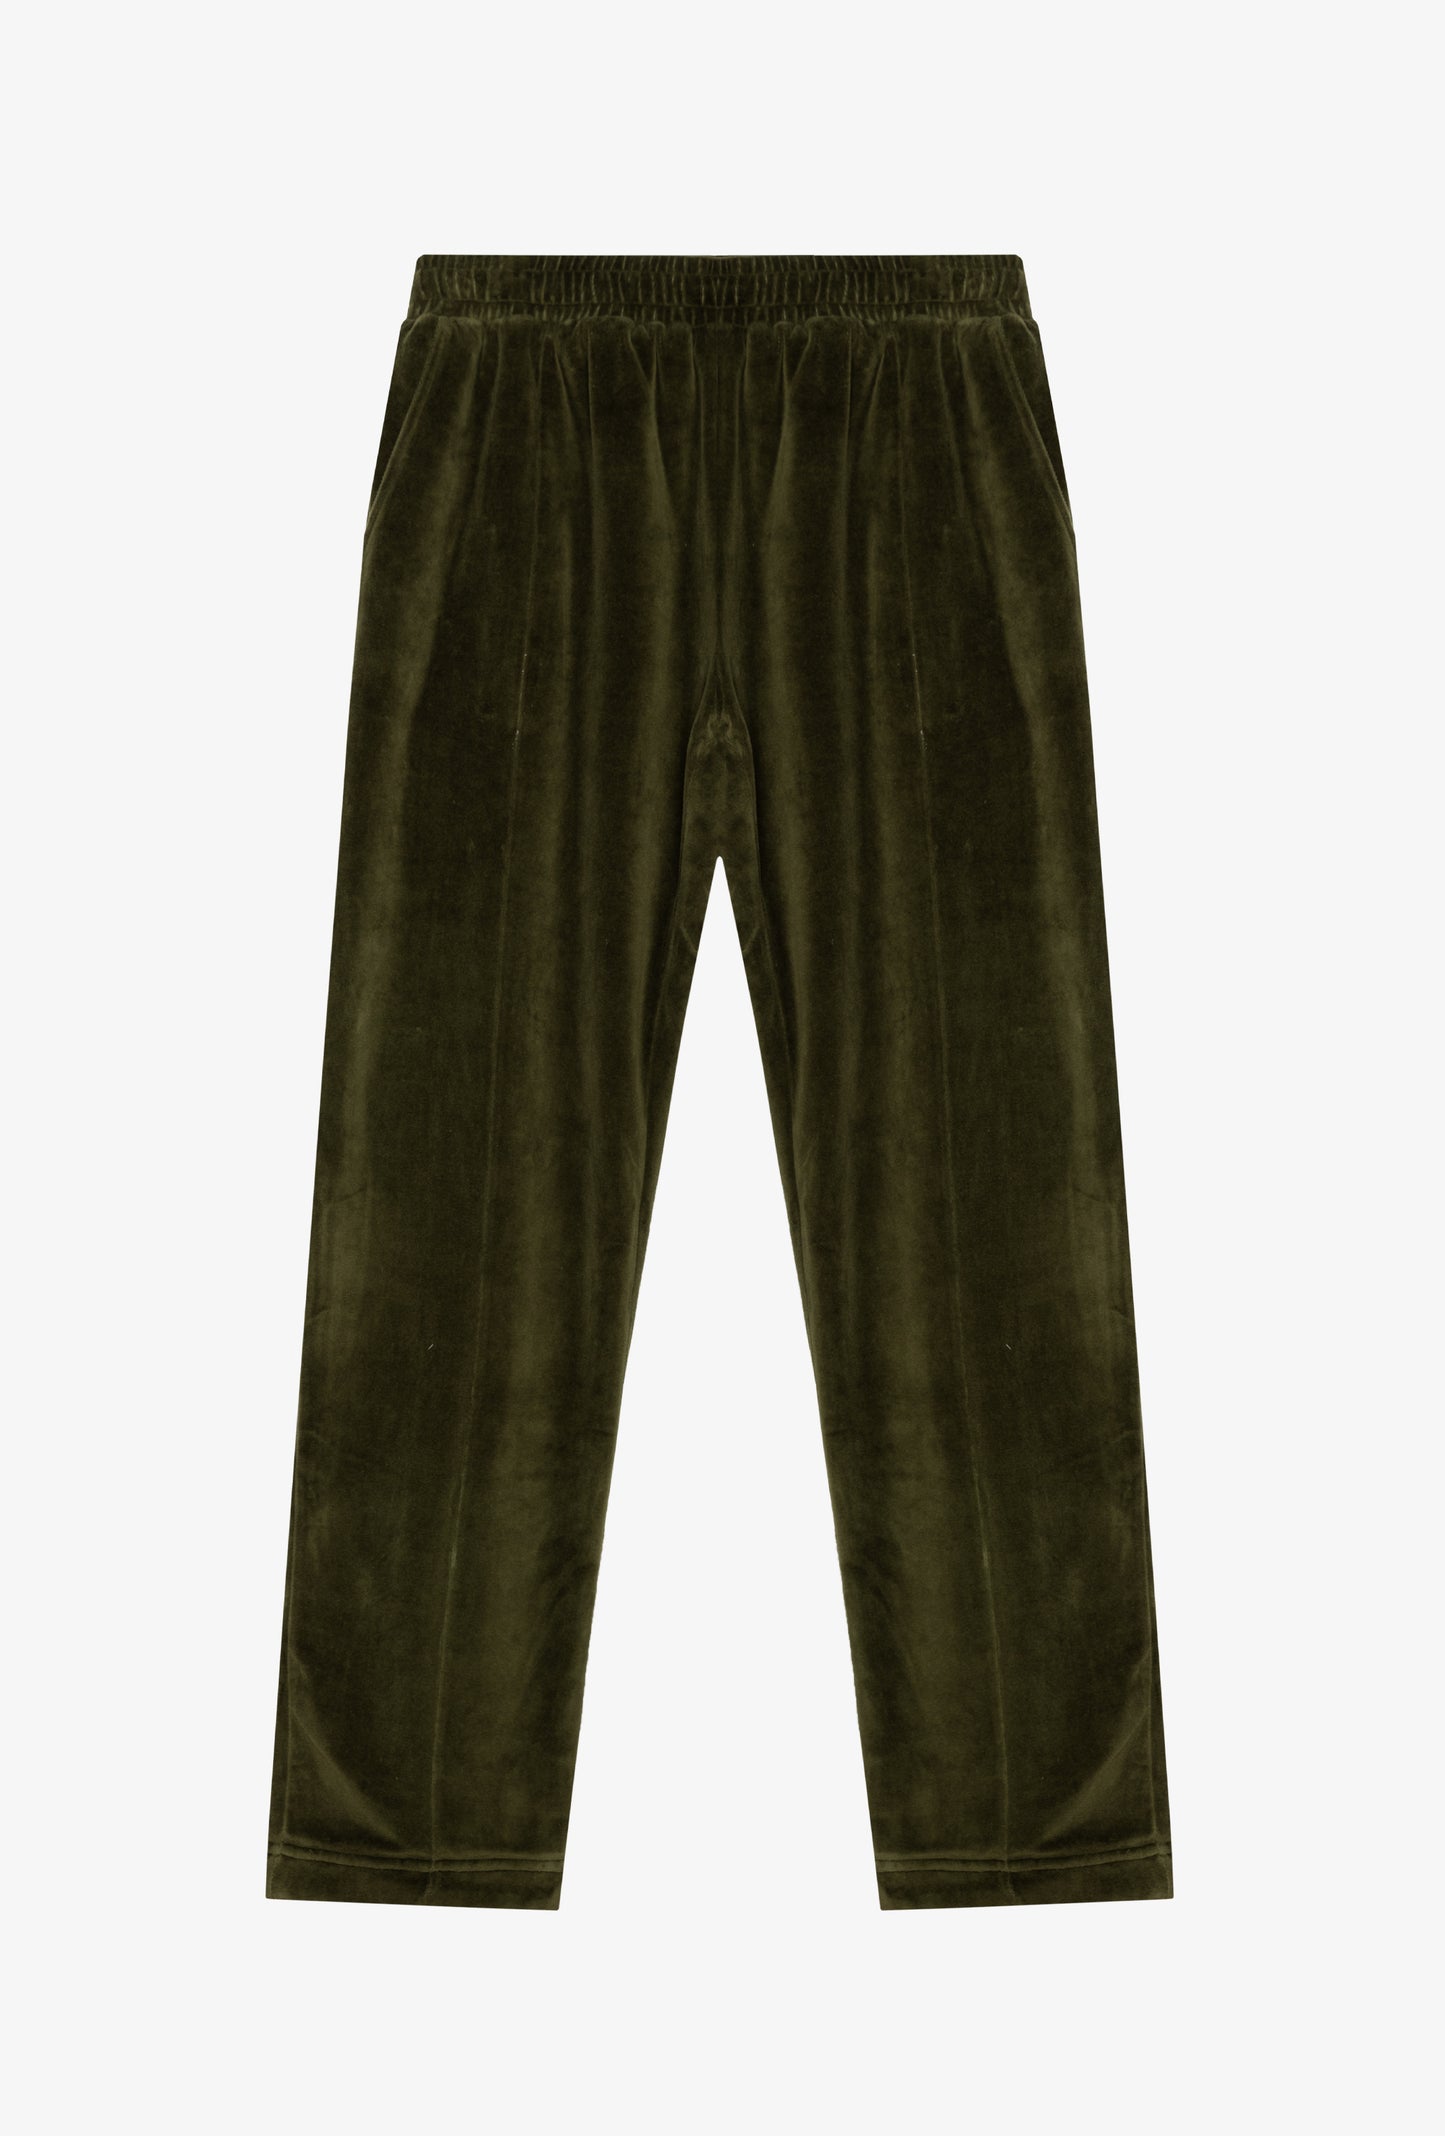 Pantalón deportivo plisado de terciopelo esmeralda